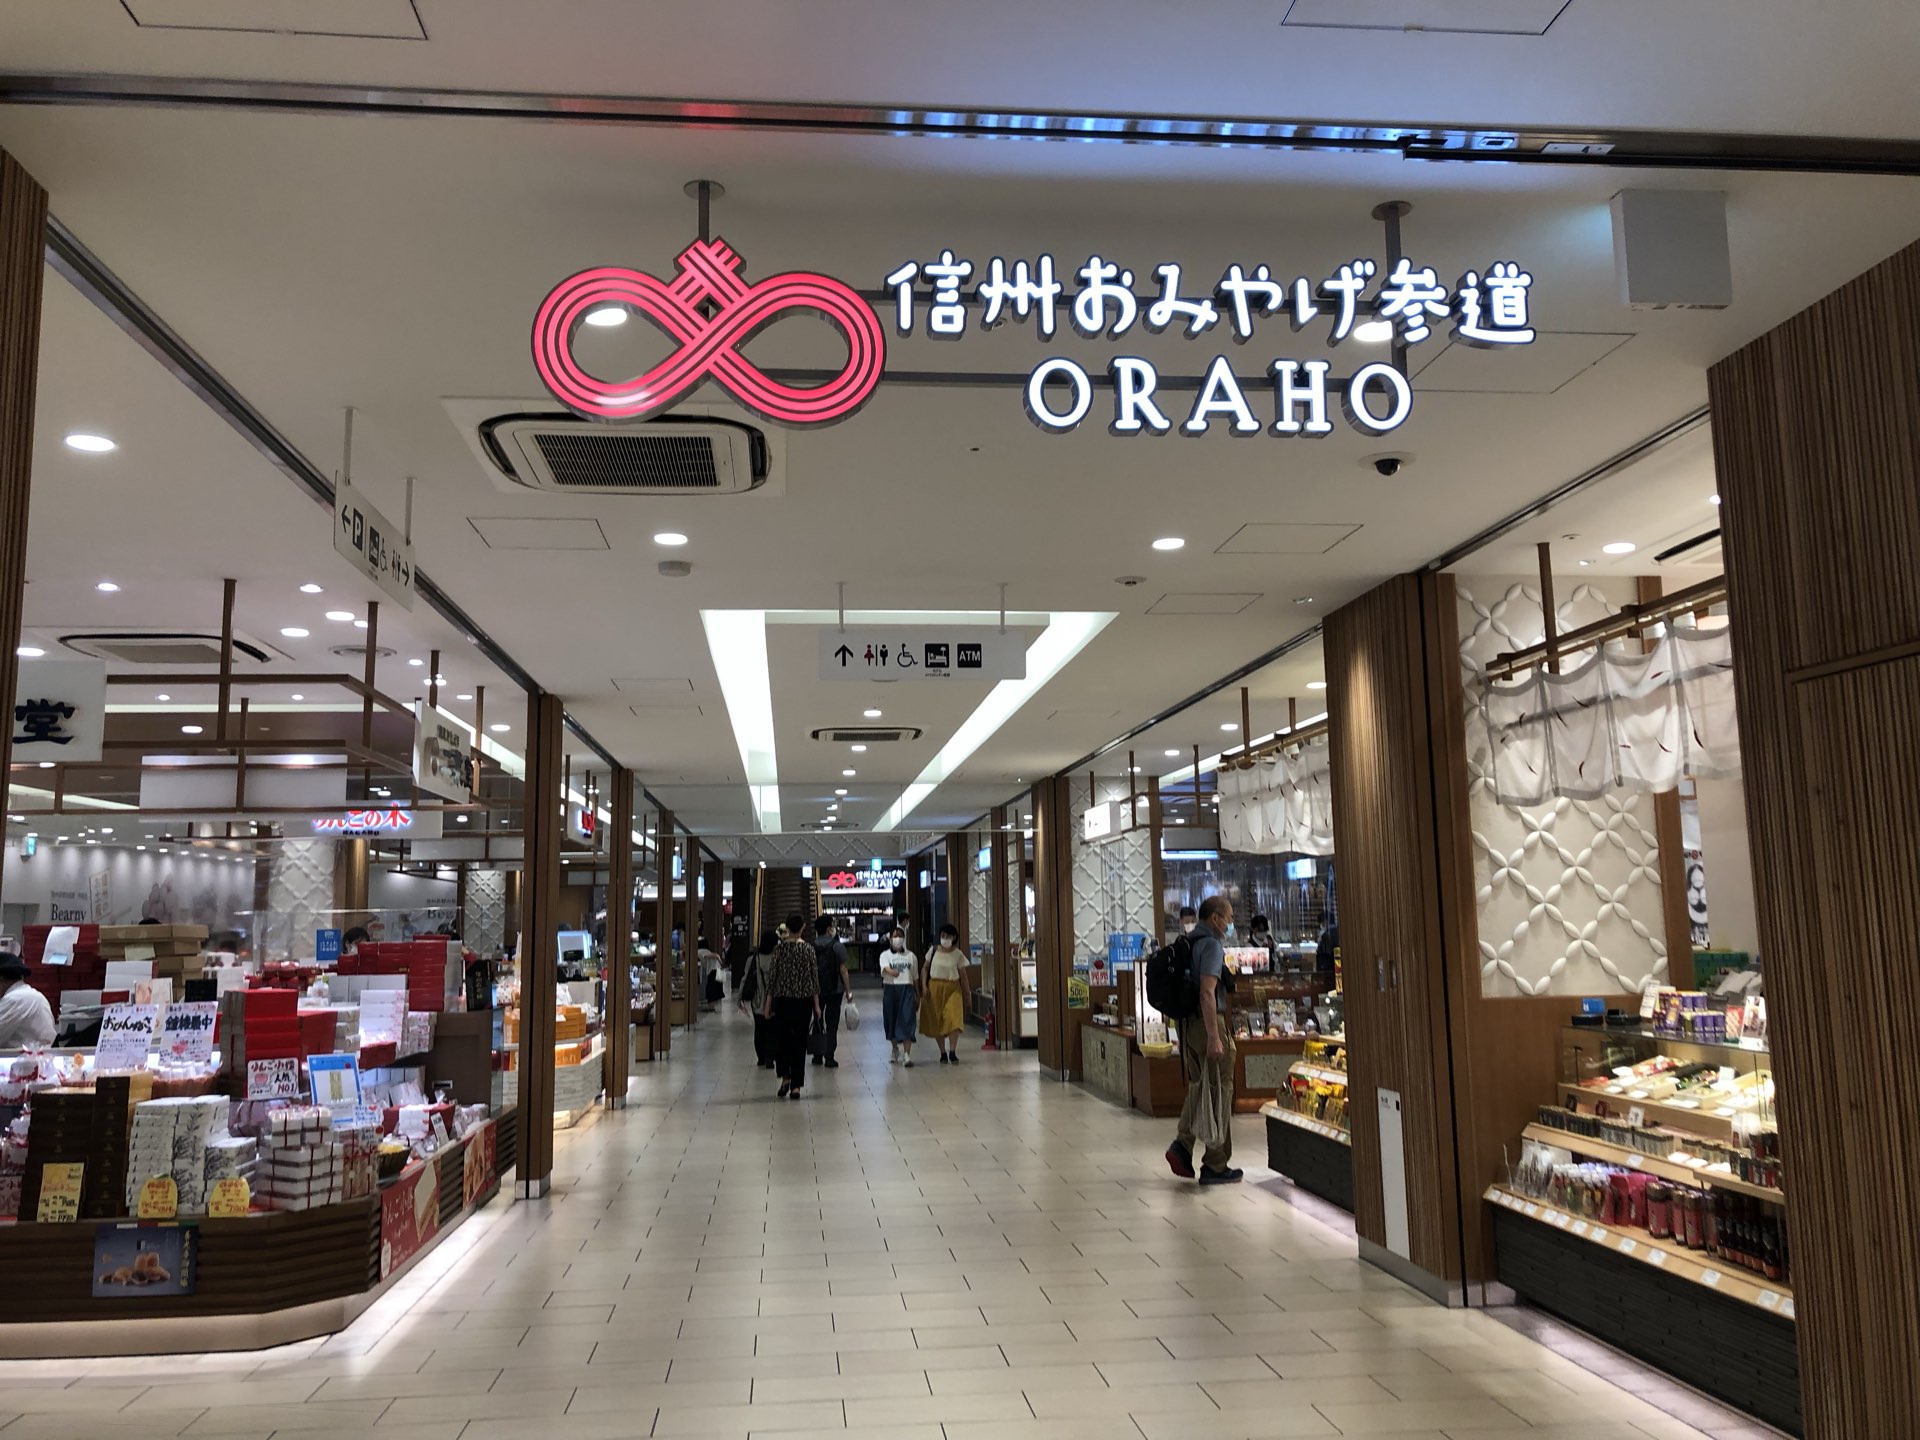 【长野】车站大楼内的“信州土产参道ORAHO”